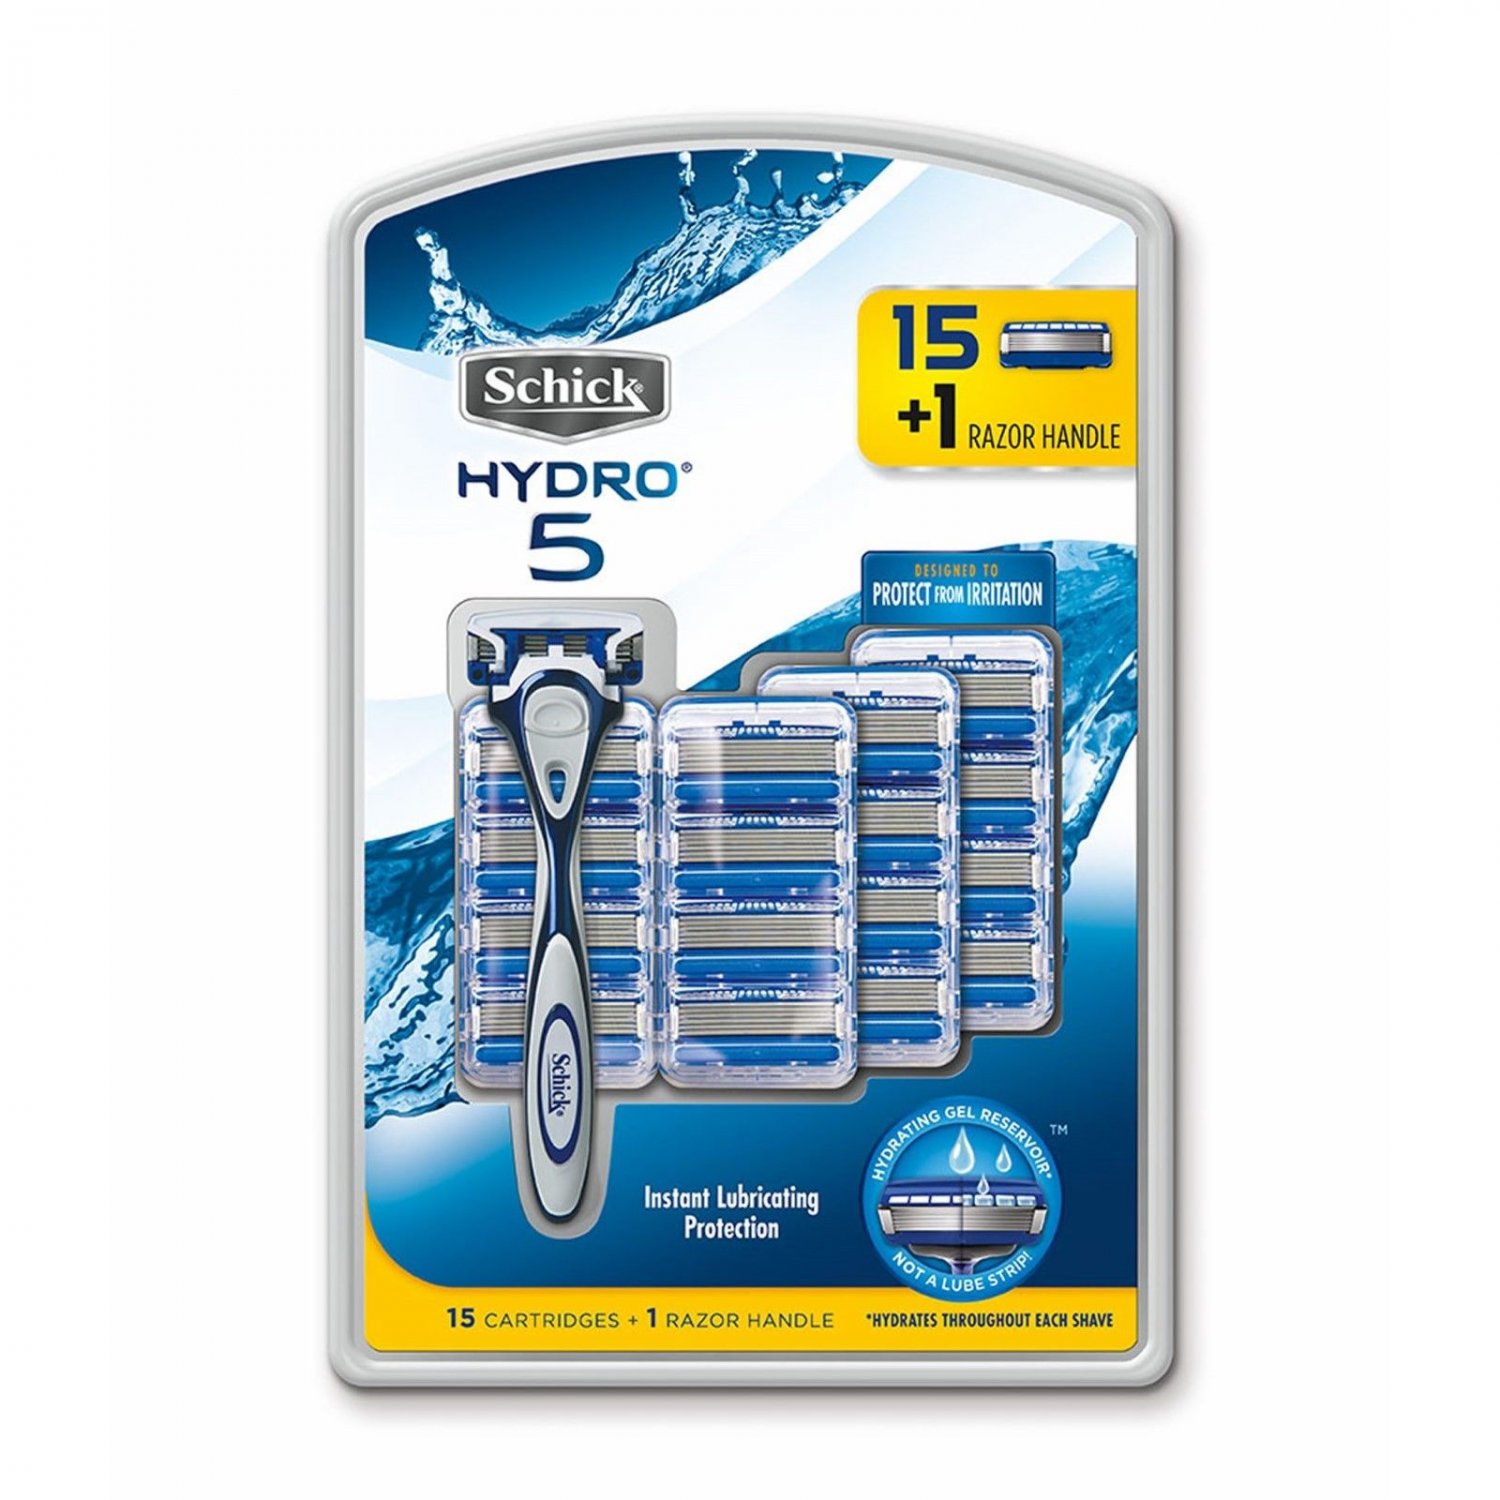 16 schick hydro 5 razor refill blade